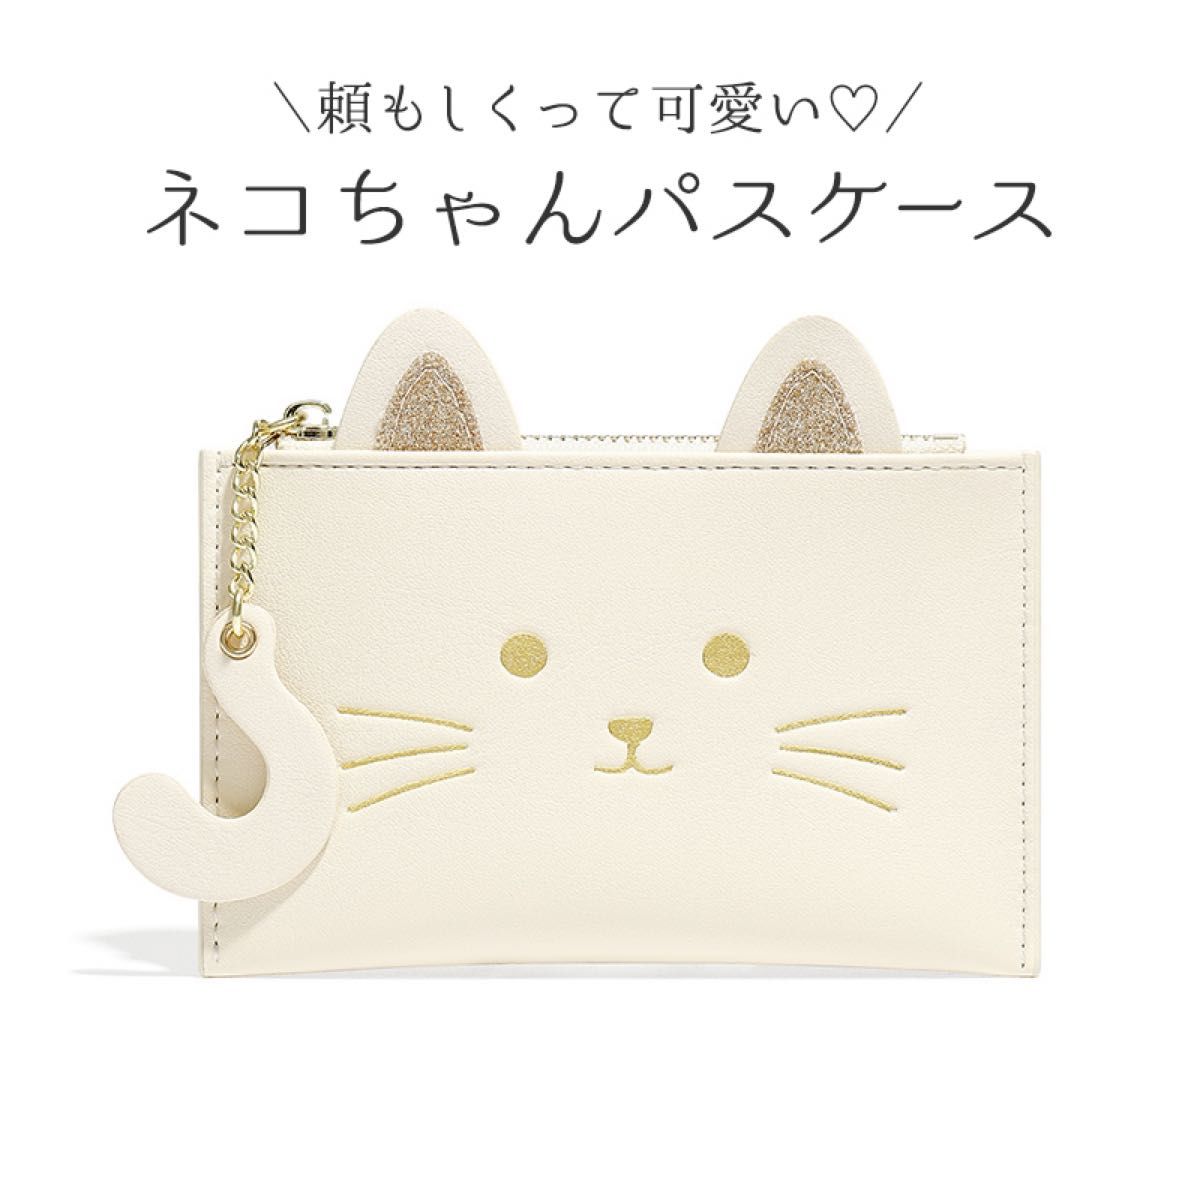 【新品】パスケース 定期入れ 白猫 ネコちゃん コインケース付き猫のミニ財布 フラグメントケース クリームイエロー